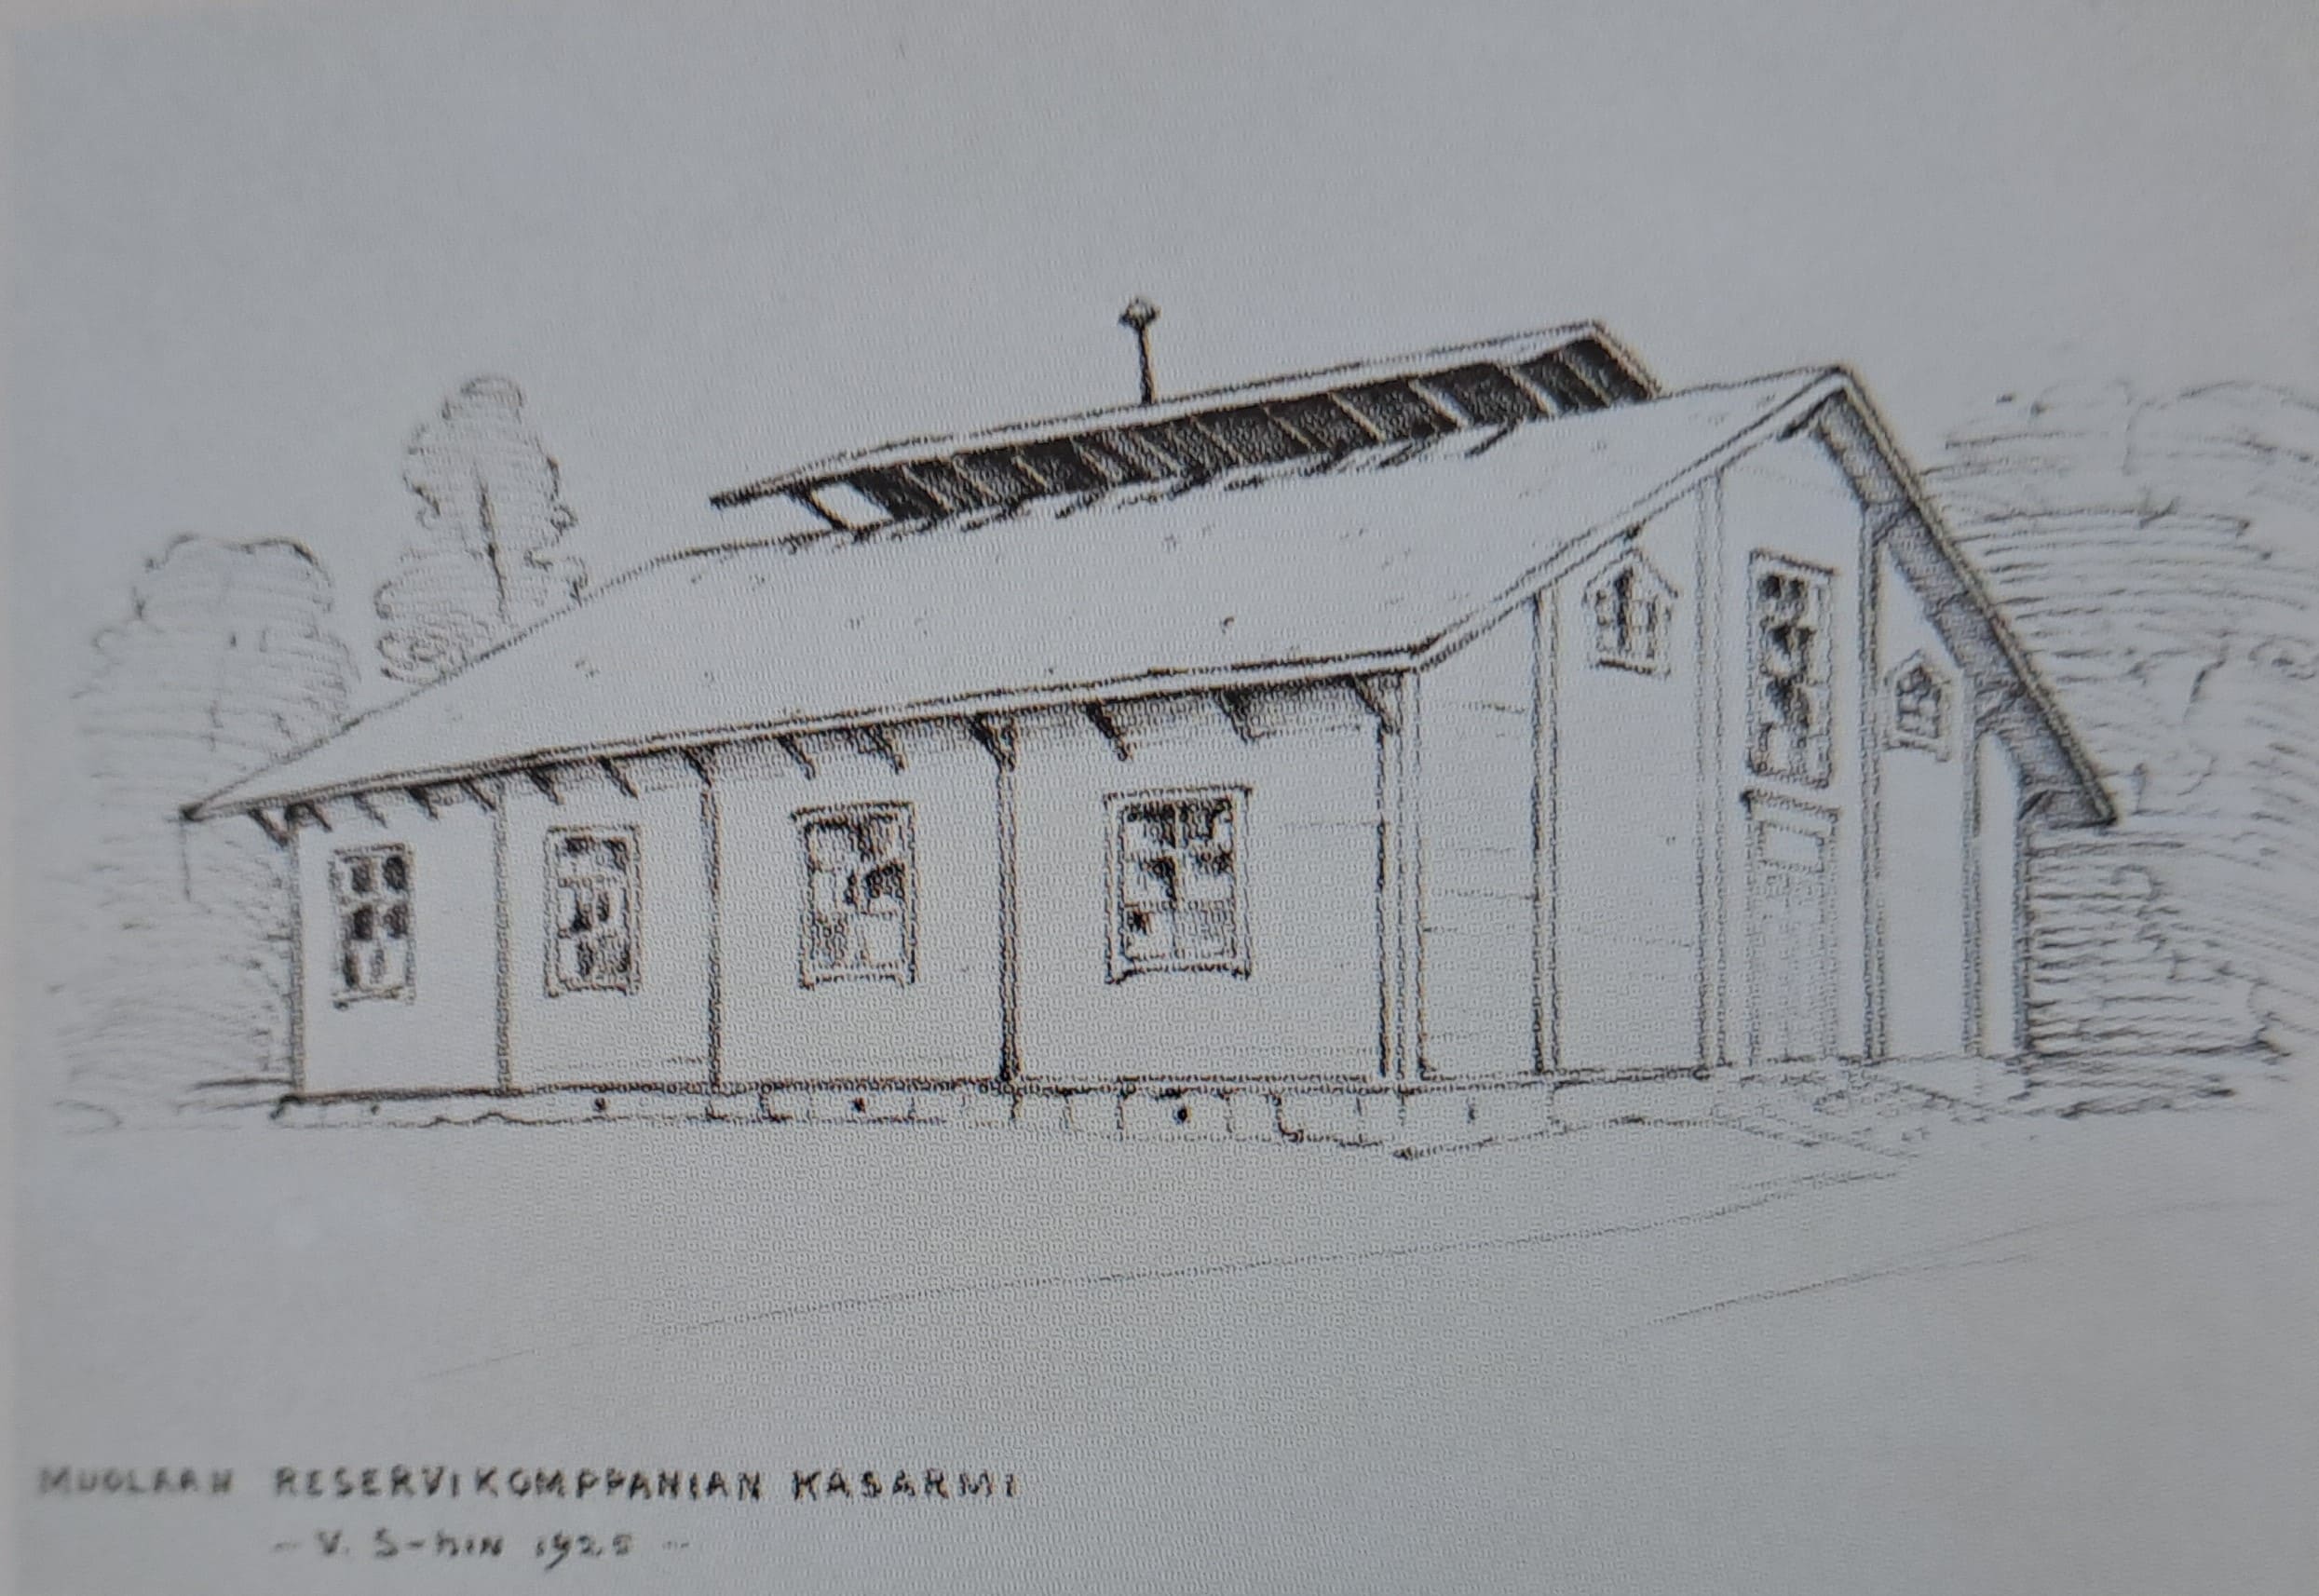 Muolaan Reservikomppanian kasarmi, 1925. Kyyrölä.jpg